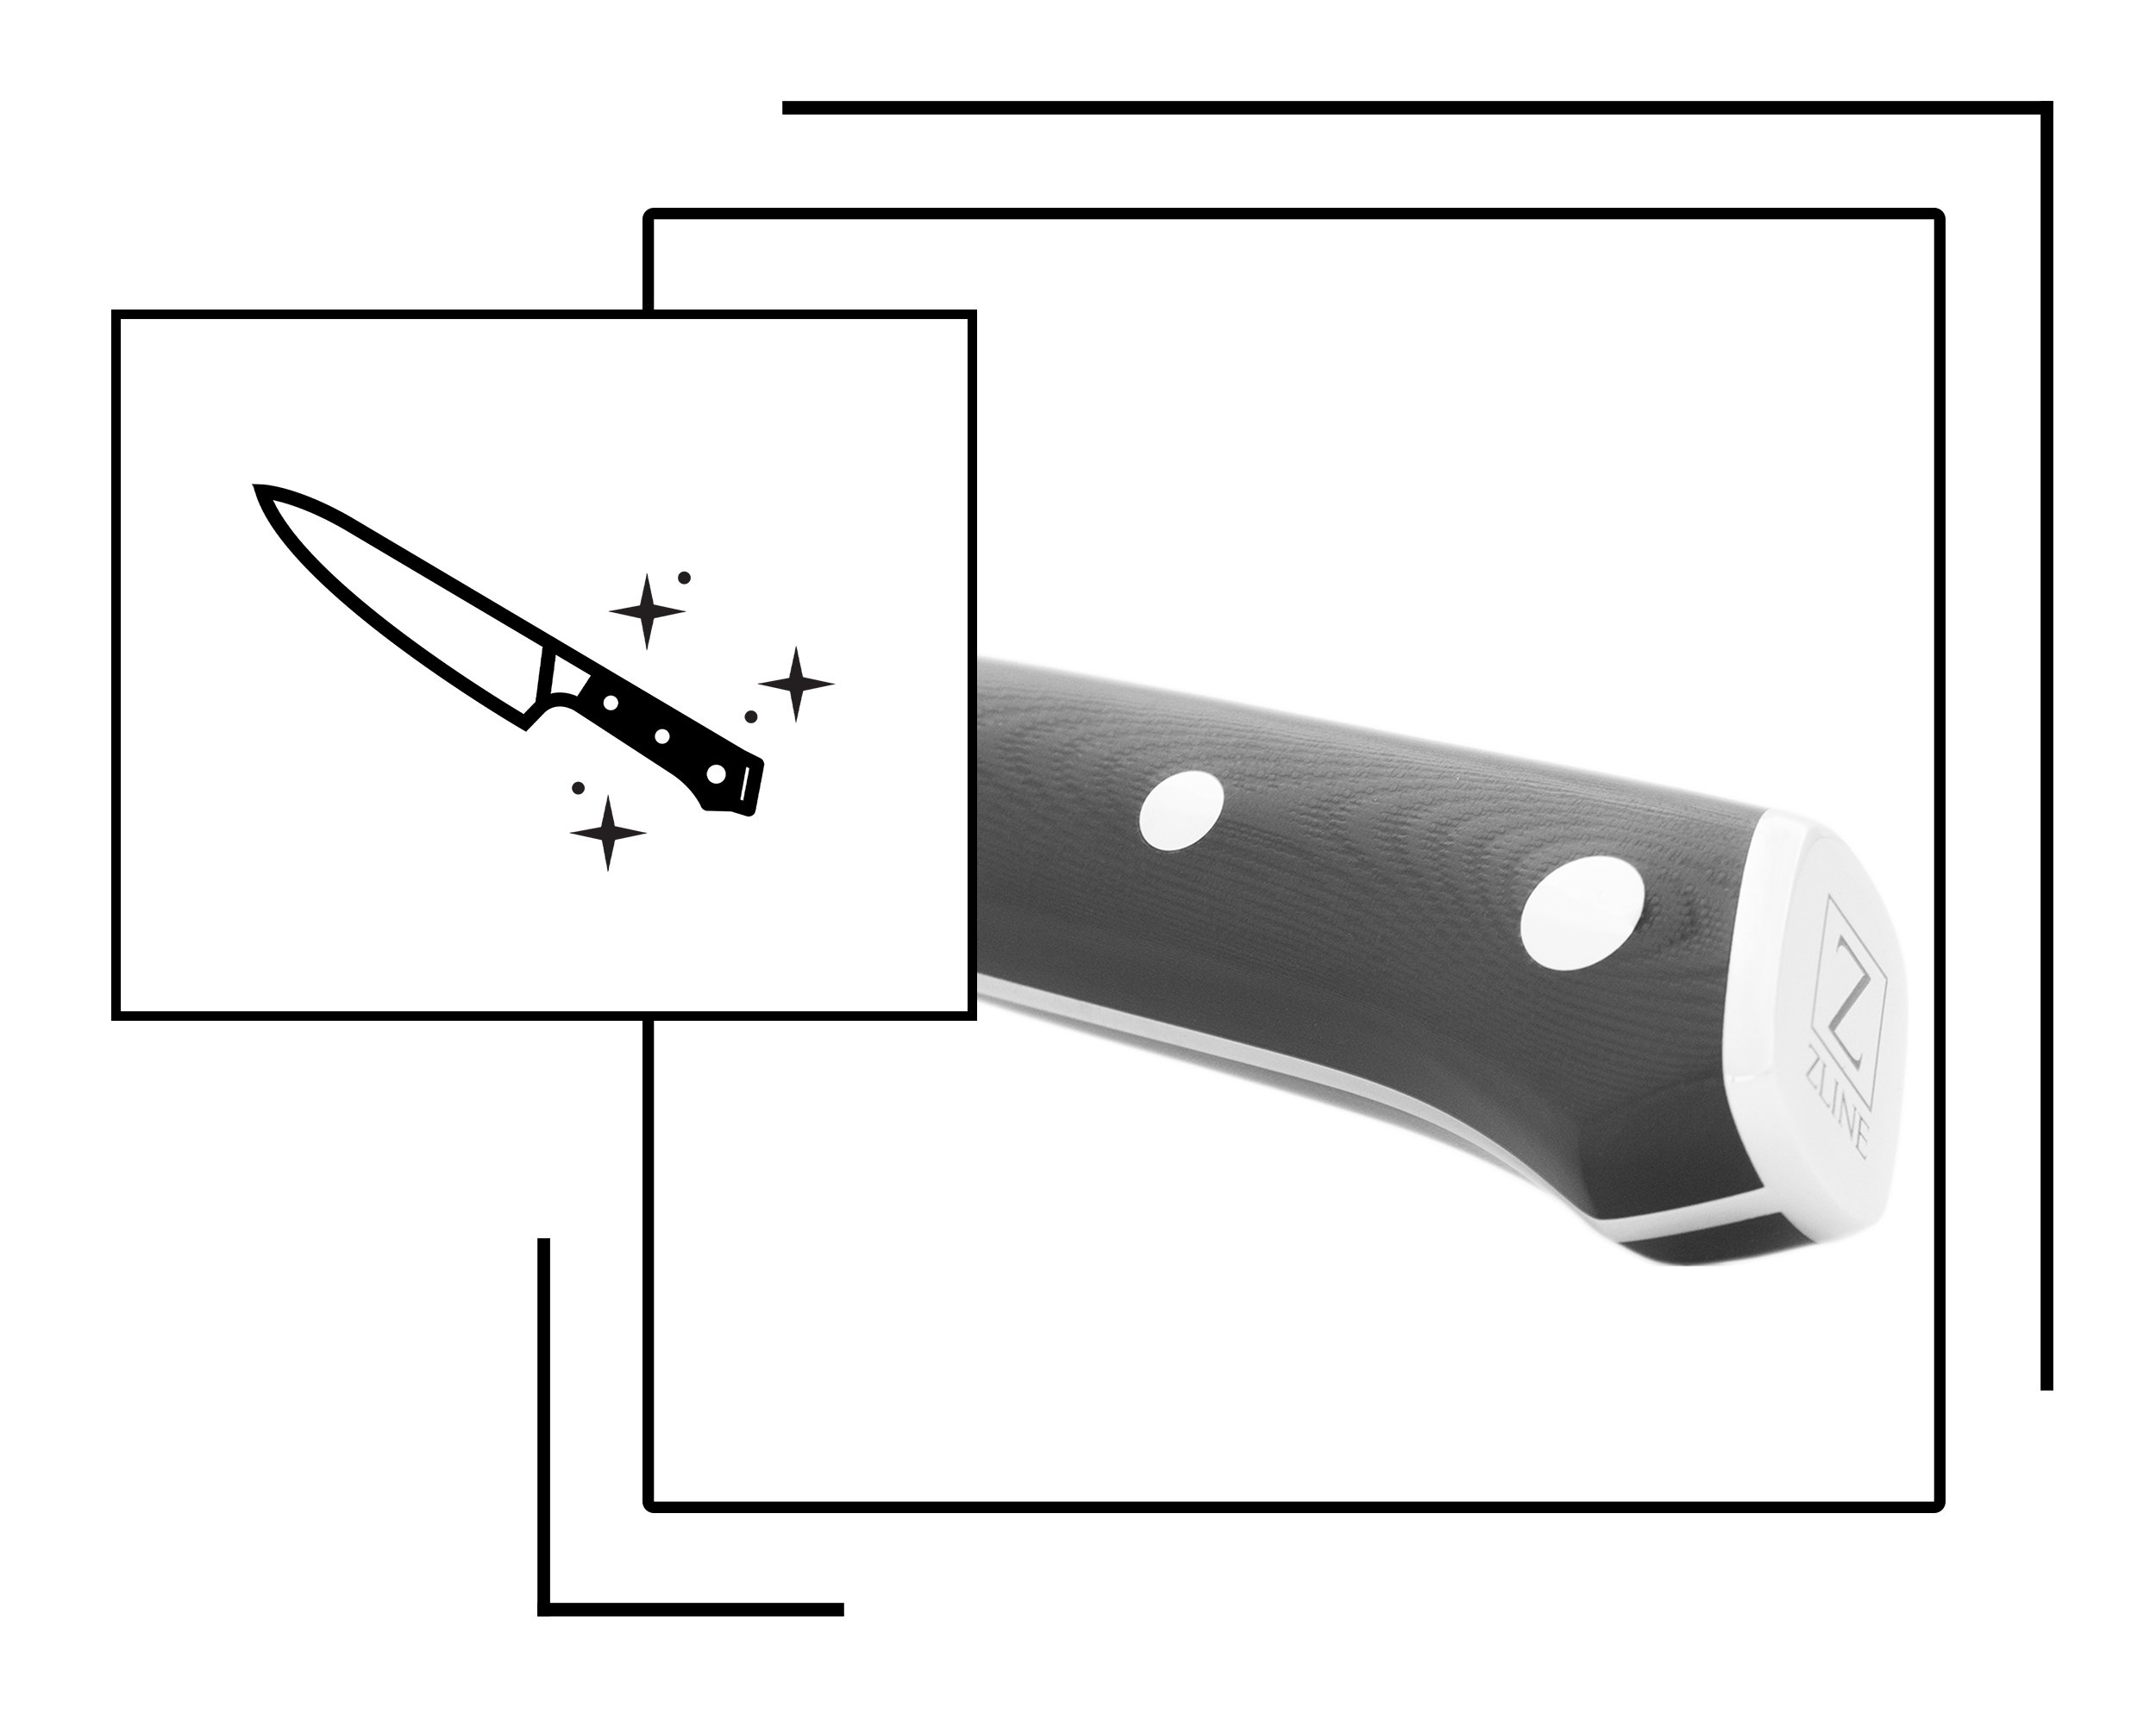 ZLINE 3-Pc German Steel Kitchen Knife Set (KSETT-GS-3)